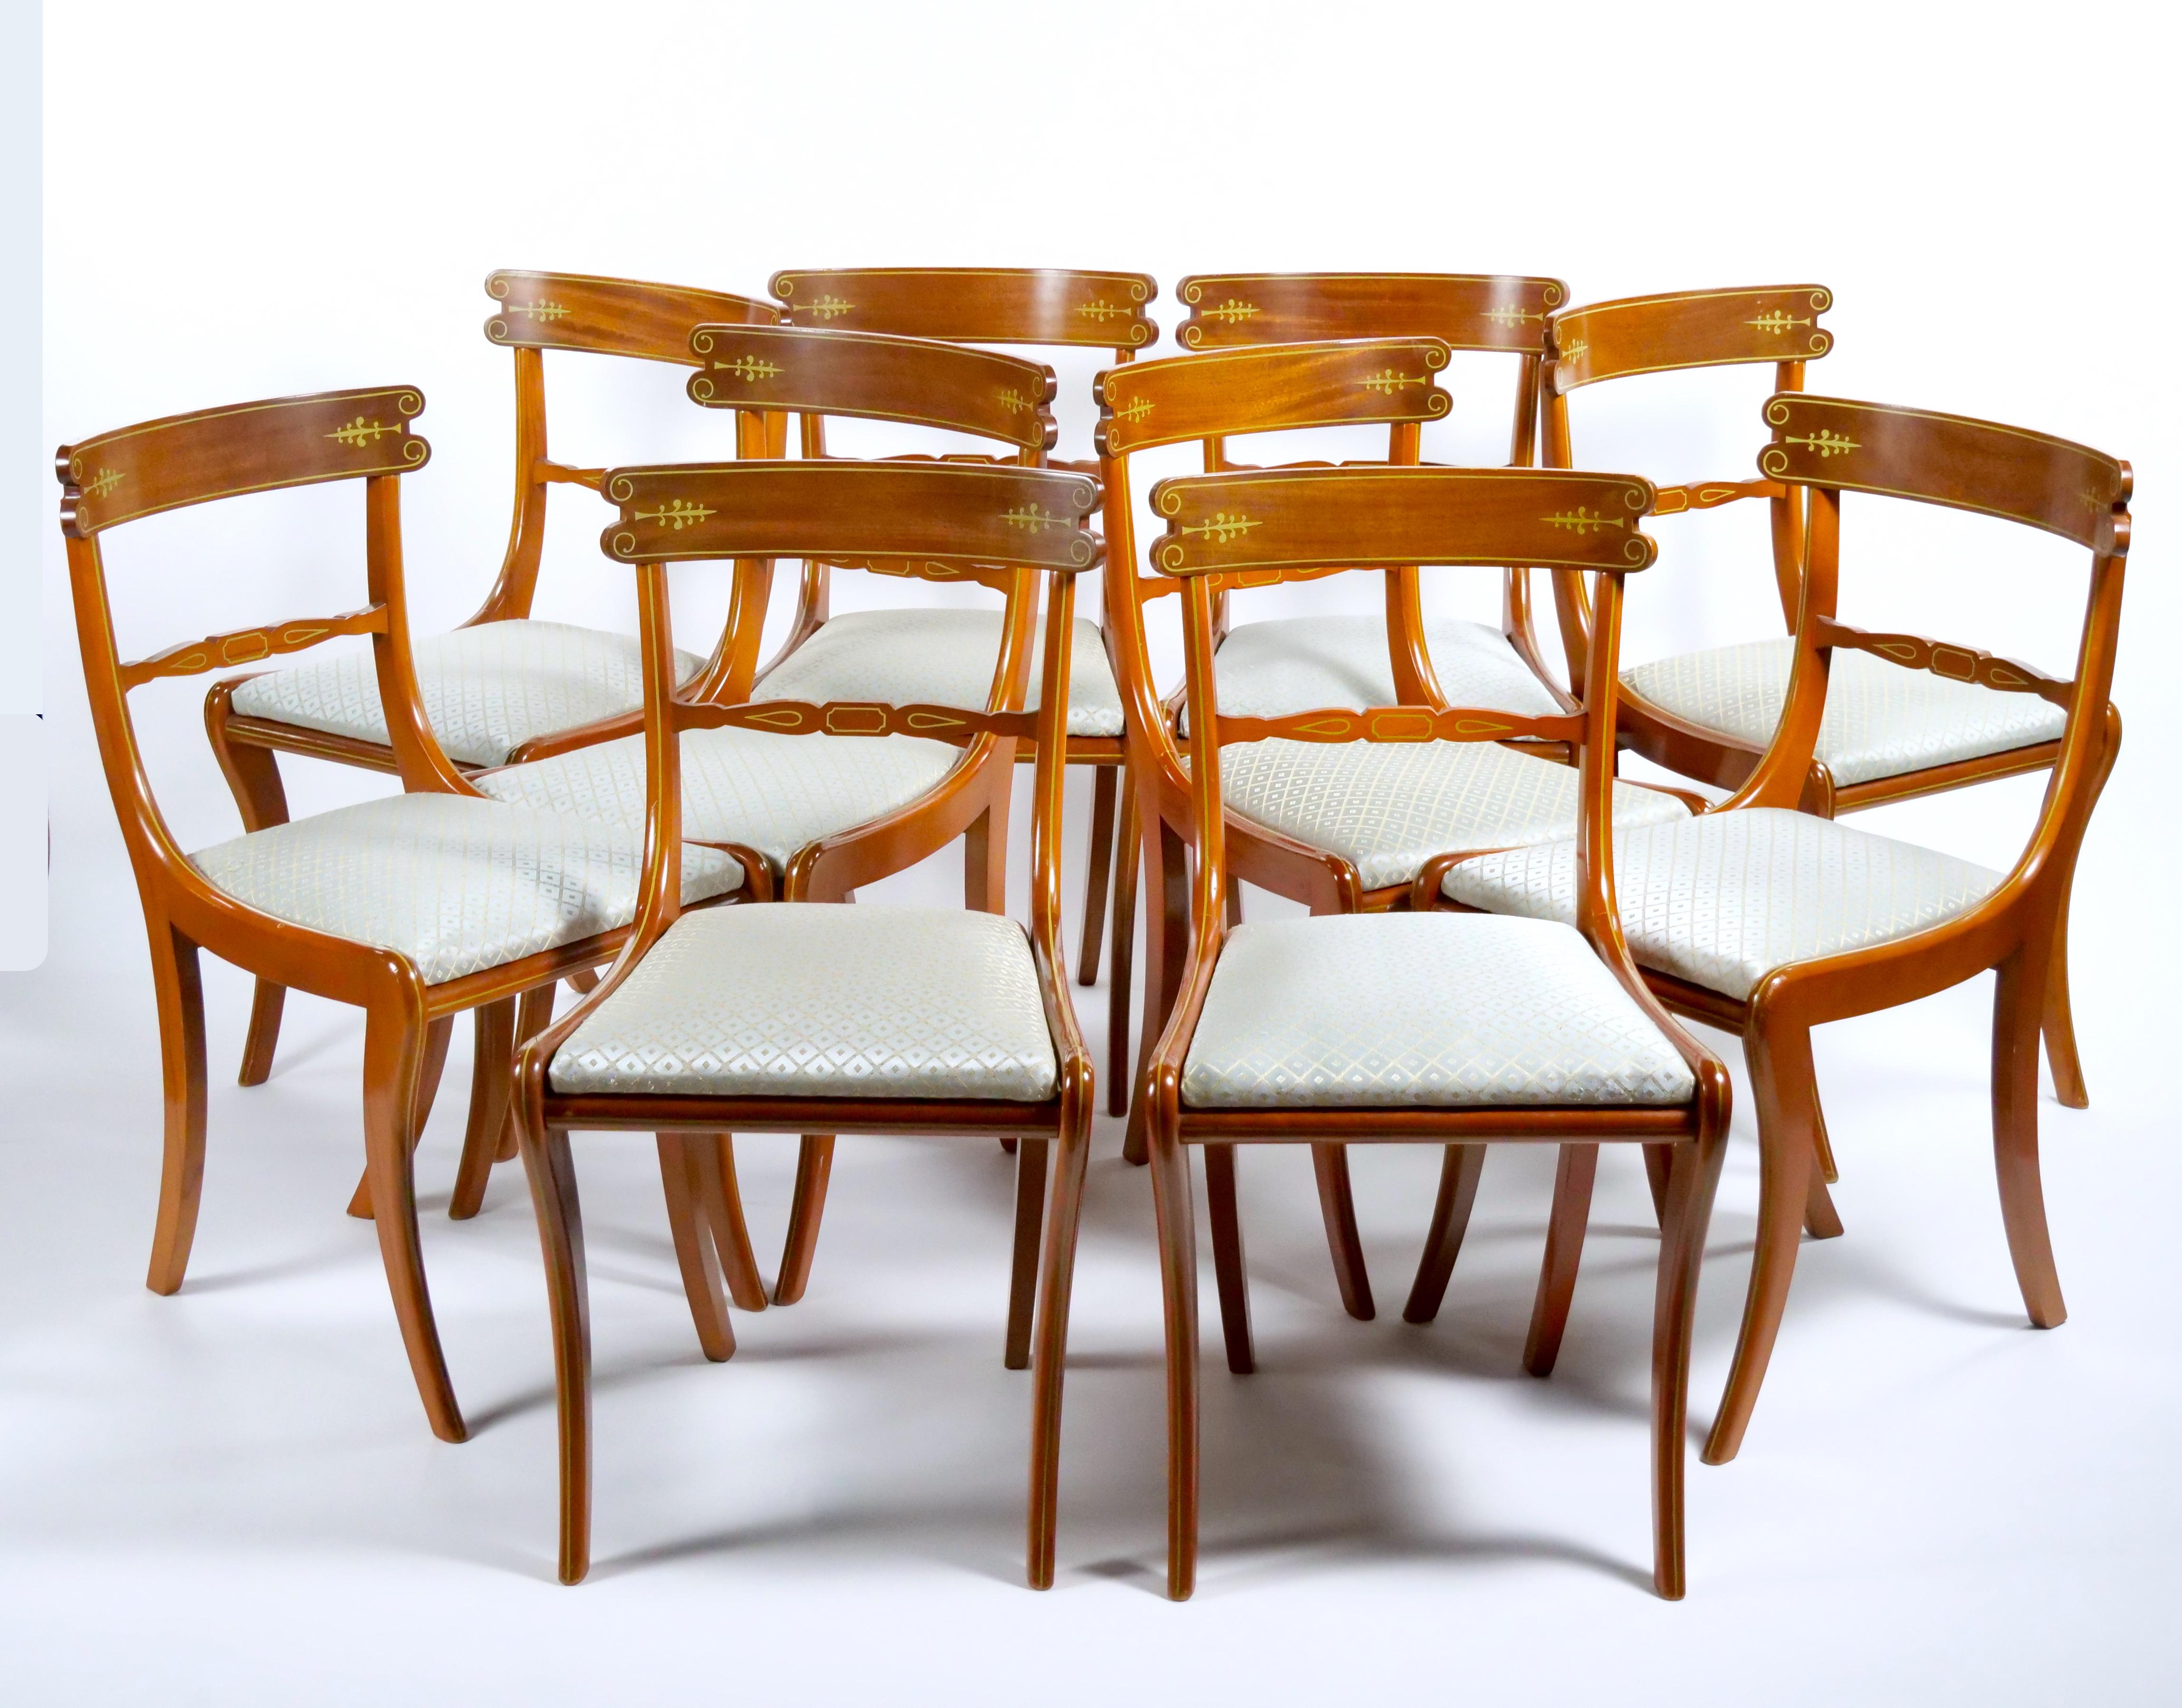 Améliorez votre expérience gastronomique avec cet ensemble de chaises de salle à manger à cadre en acajou italien du début du XXe siècle, un ensemble magnifiquement réalisé qui peut accueillir dix personnes et qui ajoute une touche de sophistication